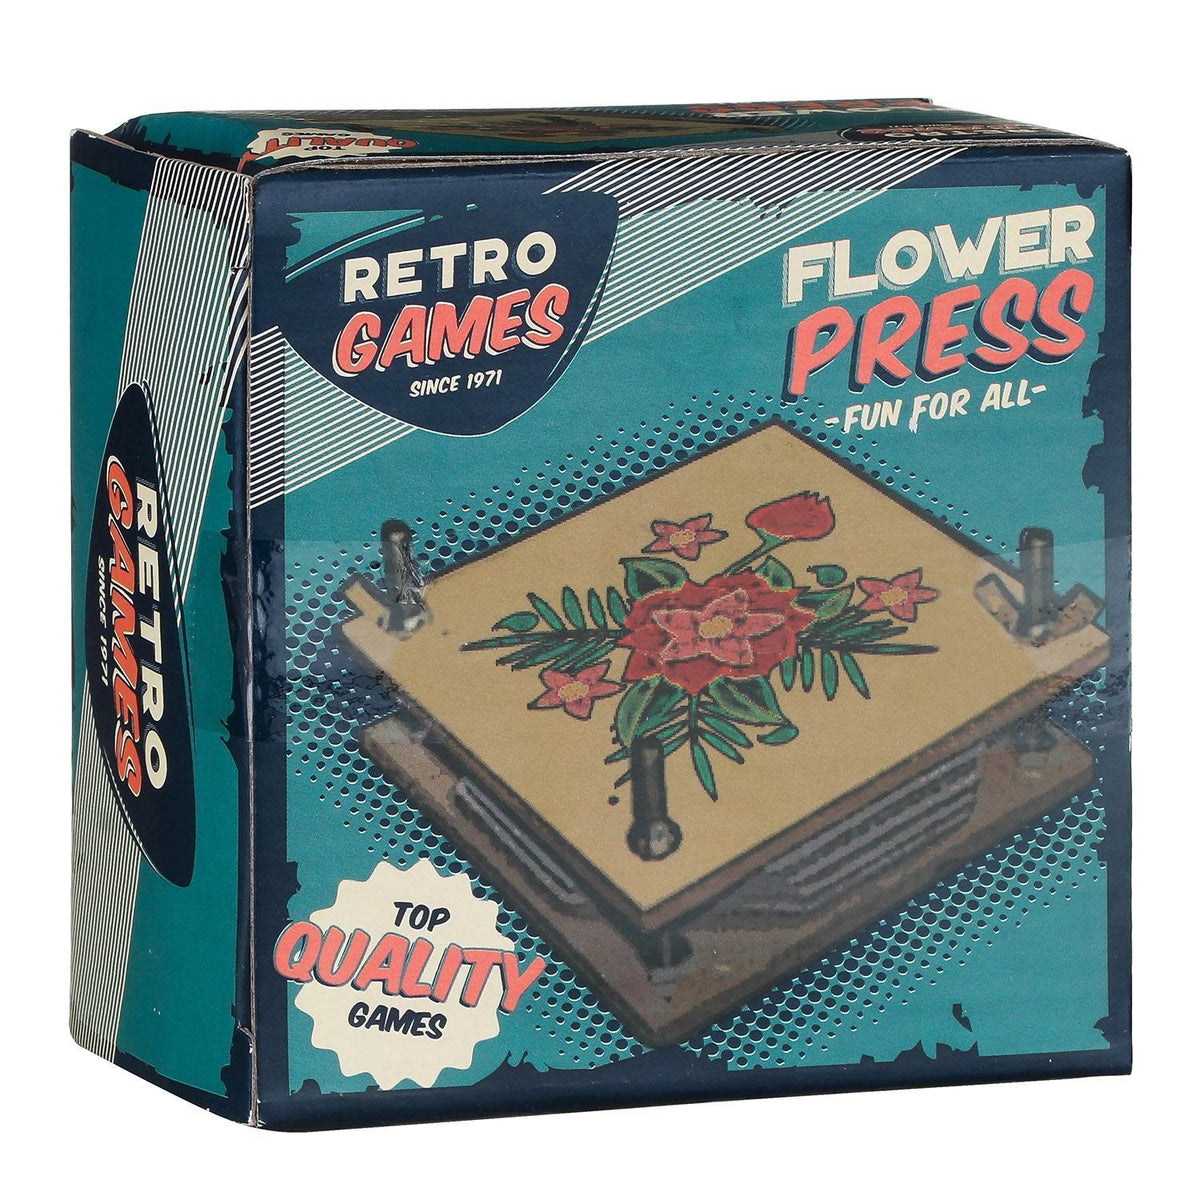 Retro Games Wooden Flower Press - Indoor Outdoors